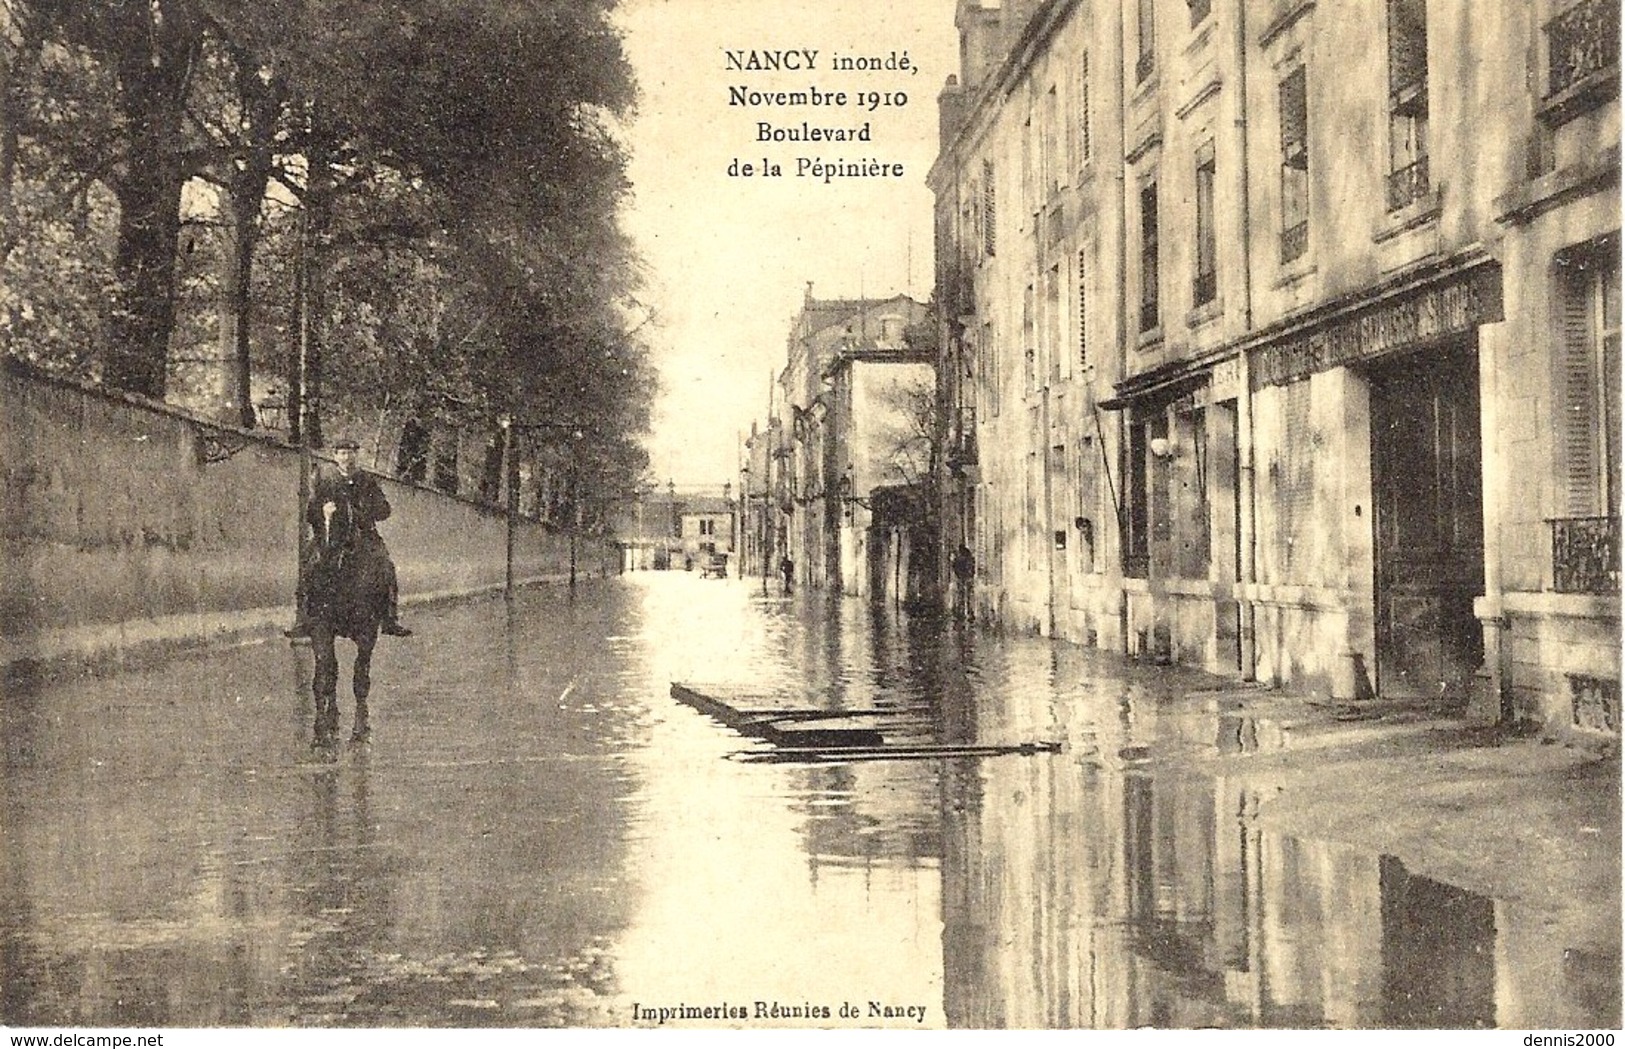 NANCY Inondé -Novembre 1910 - Boulevard De La Pépinière  - Imprimeries Réunies - Nancy